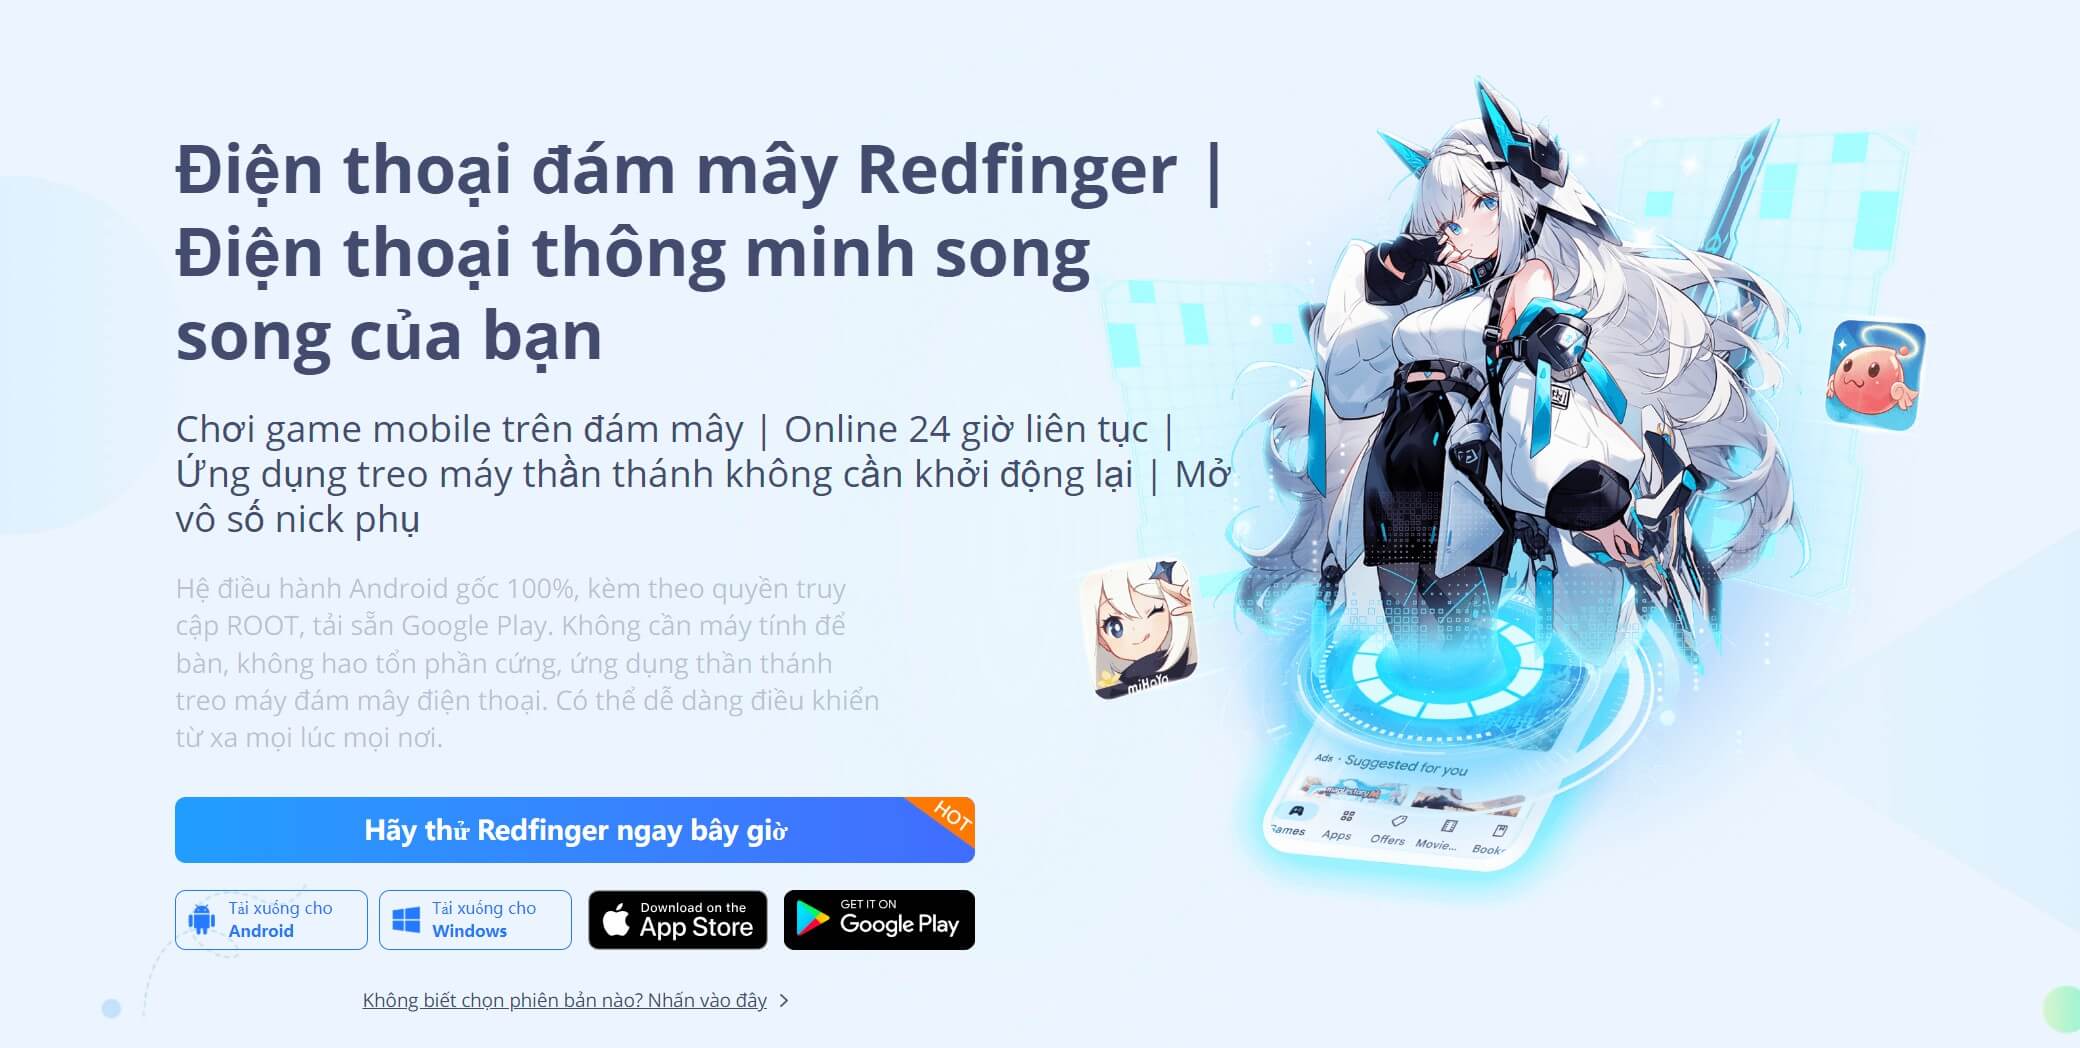 Redfinger Cloud Phone VI